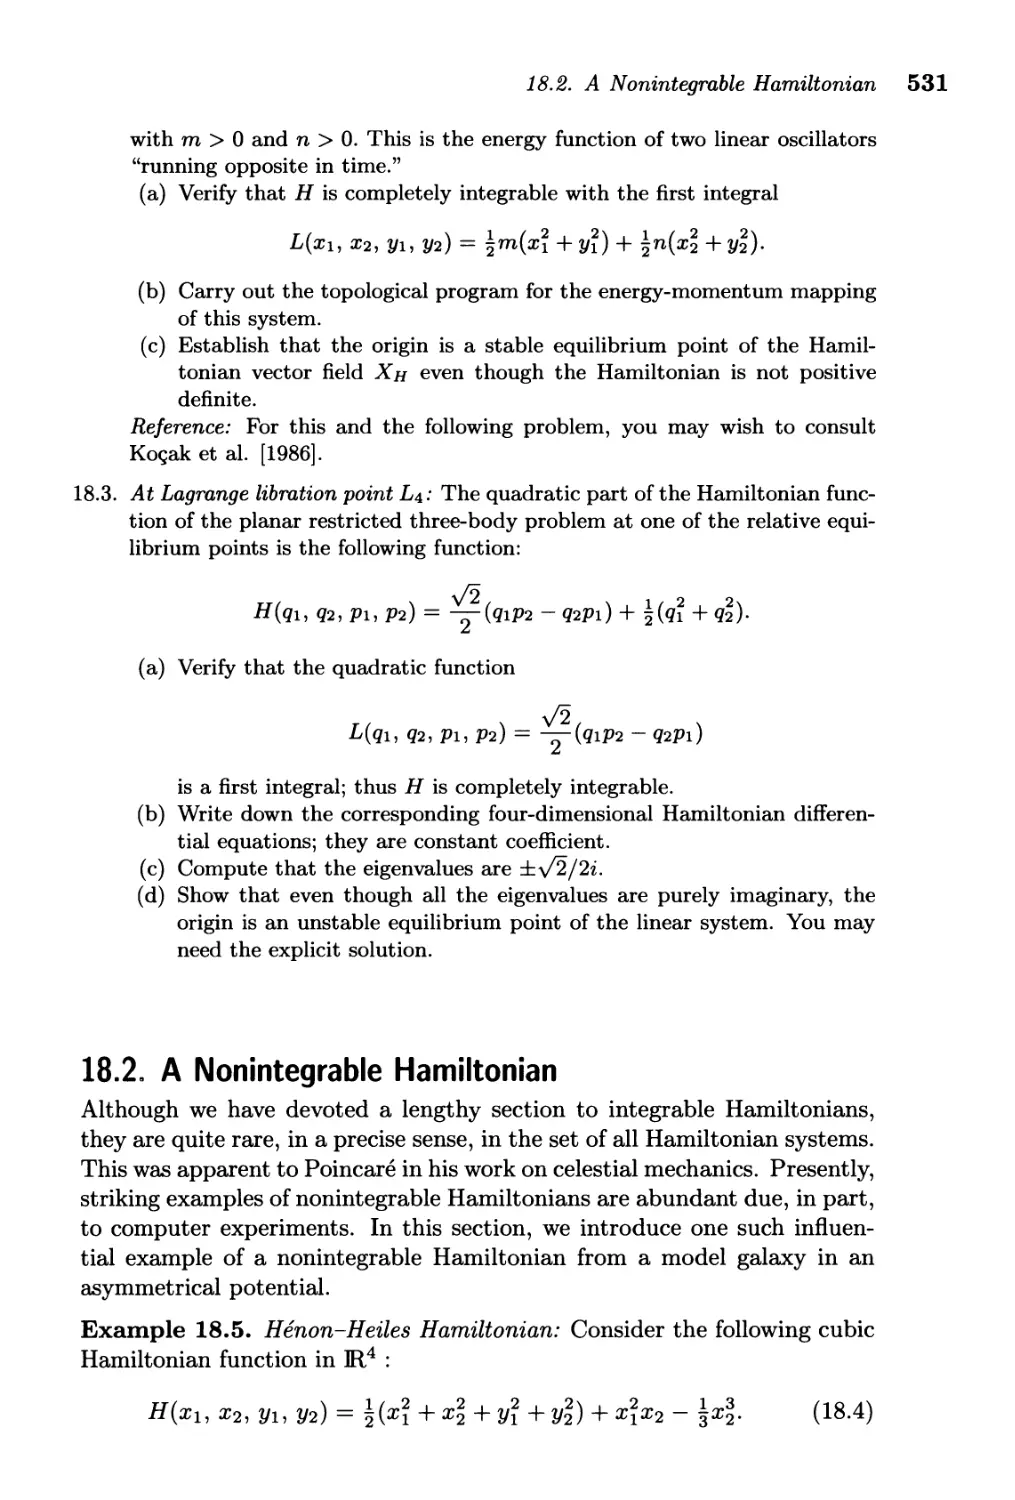 18.2. A Nonintegrable Hamiltonian